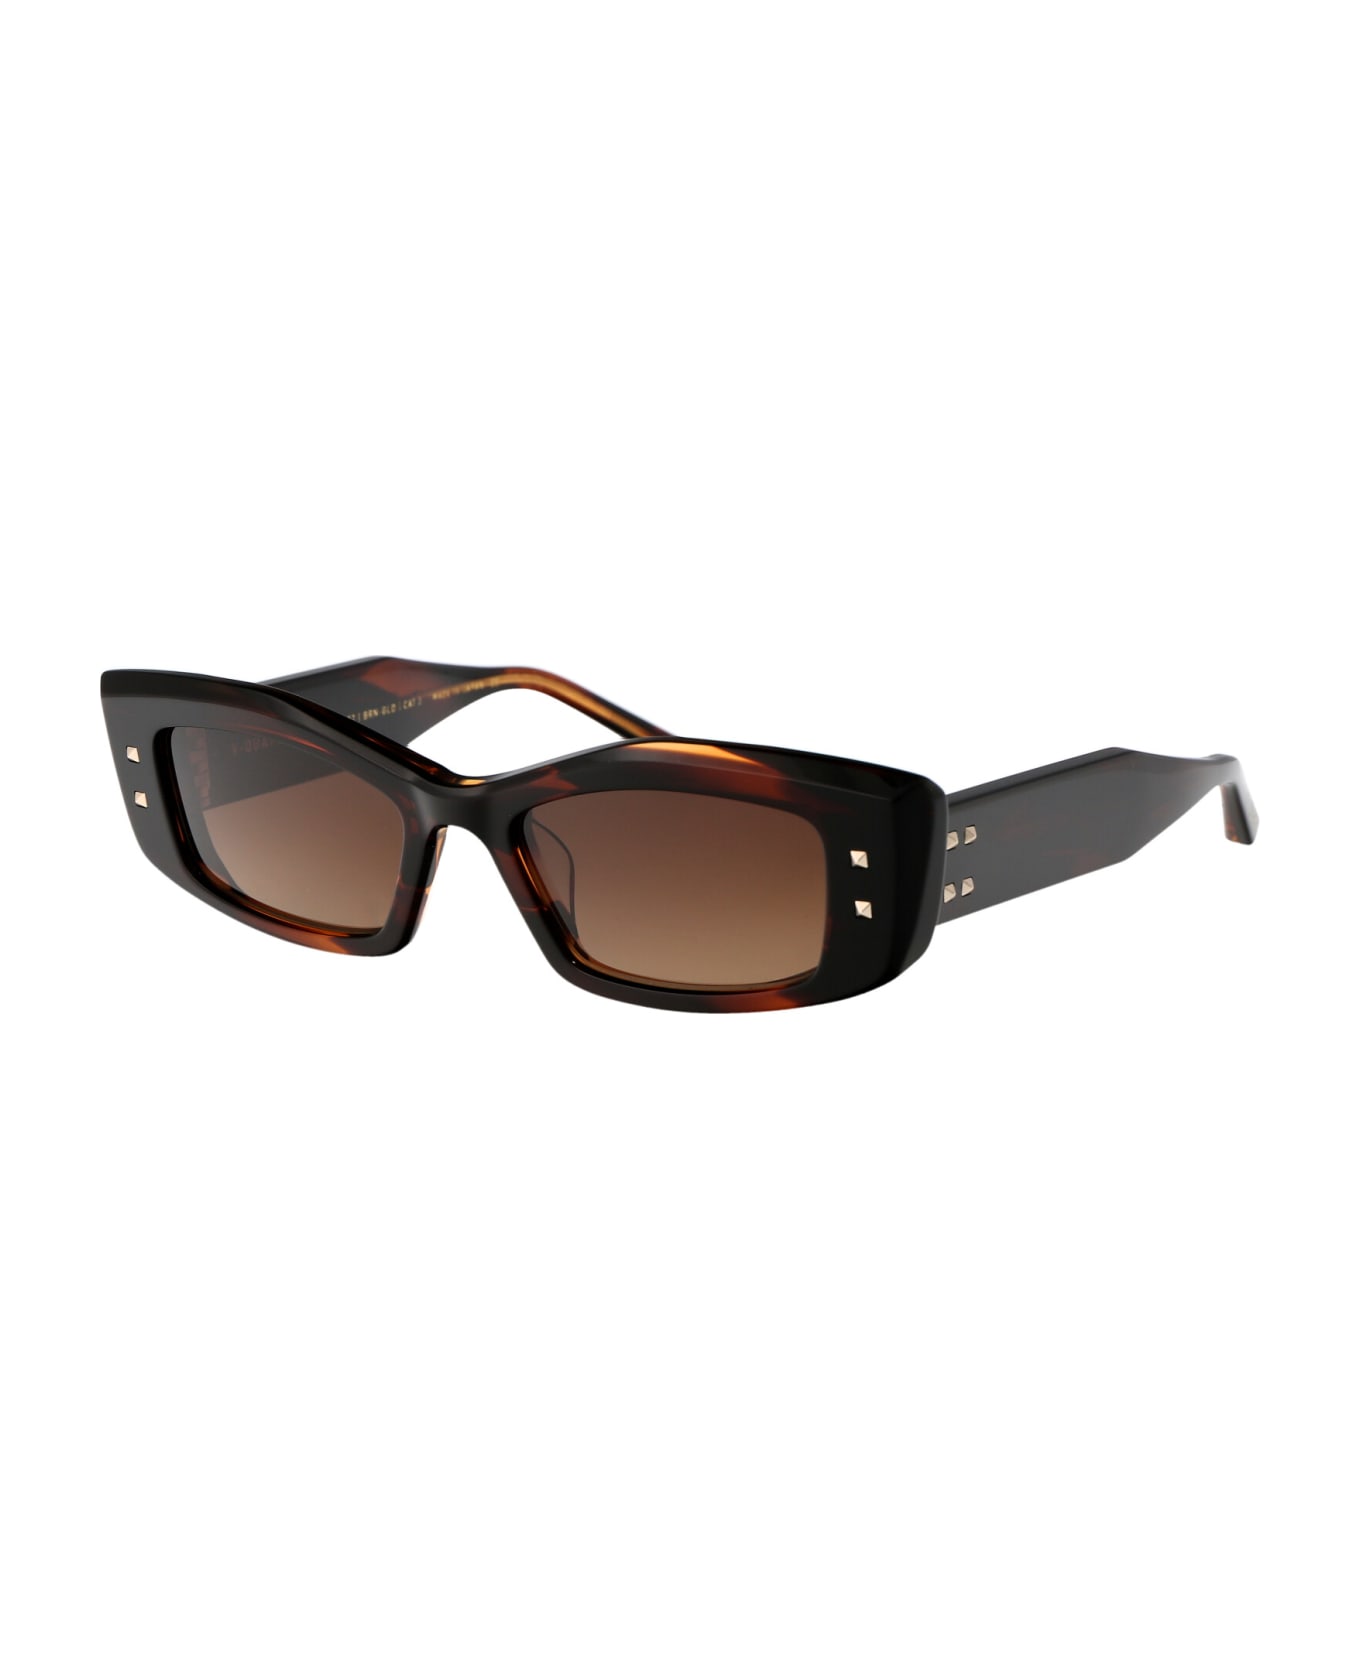 Valentino Eyewear V - Quattro Sunglasses - 109C BRN - GLD 